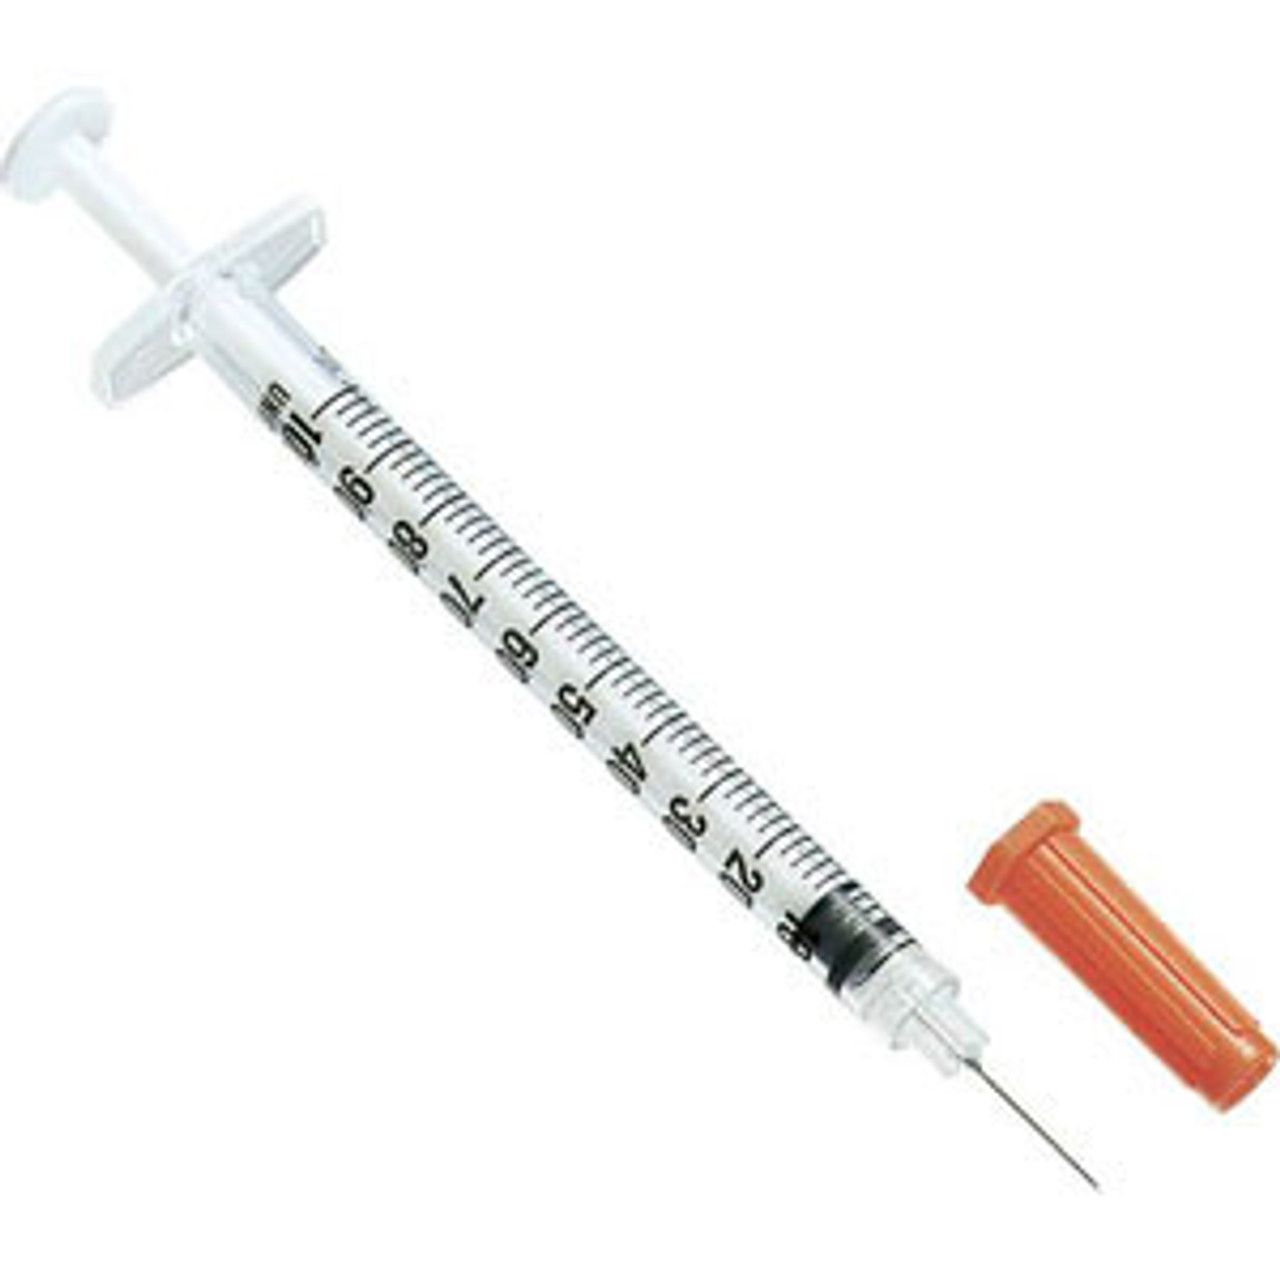 Advocate Insulin Pen Needle, 31G x 3/16 $12.76/Box of 100616